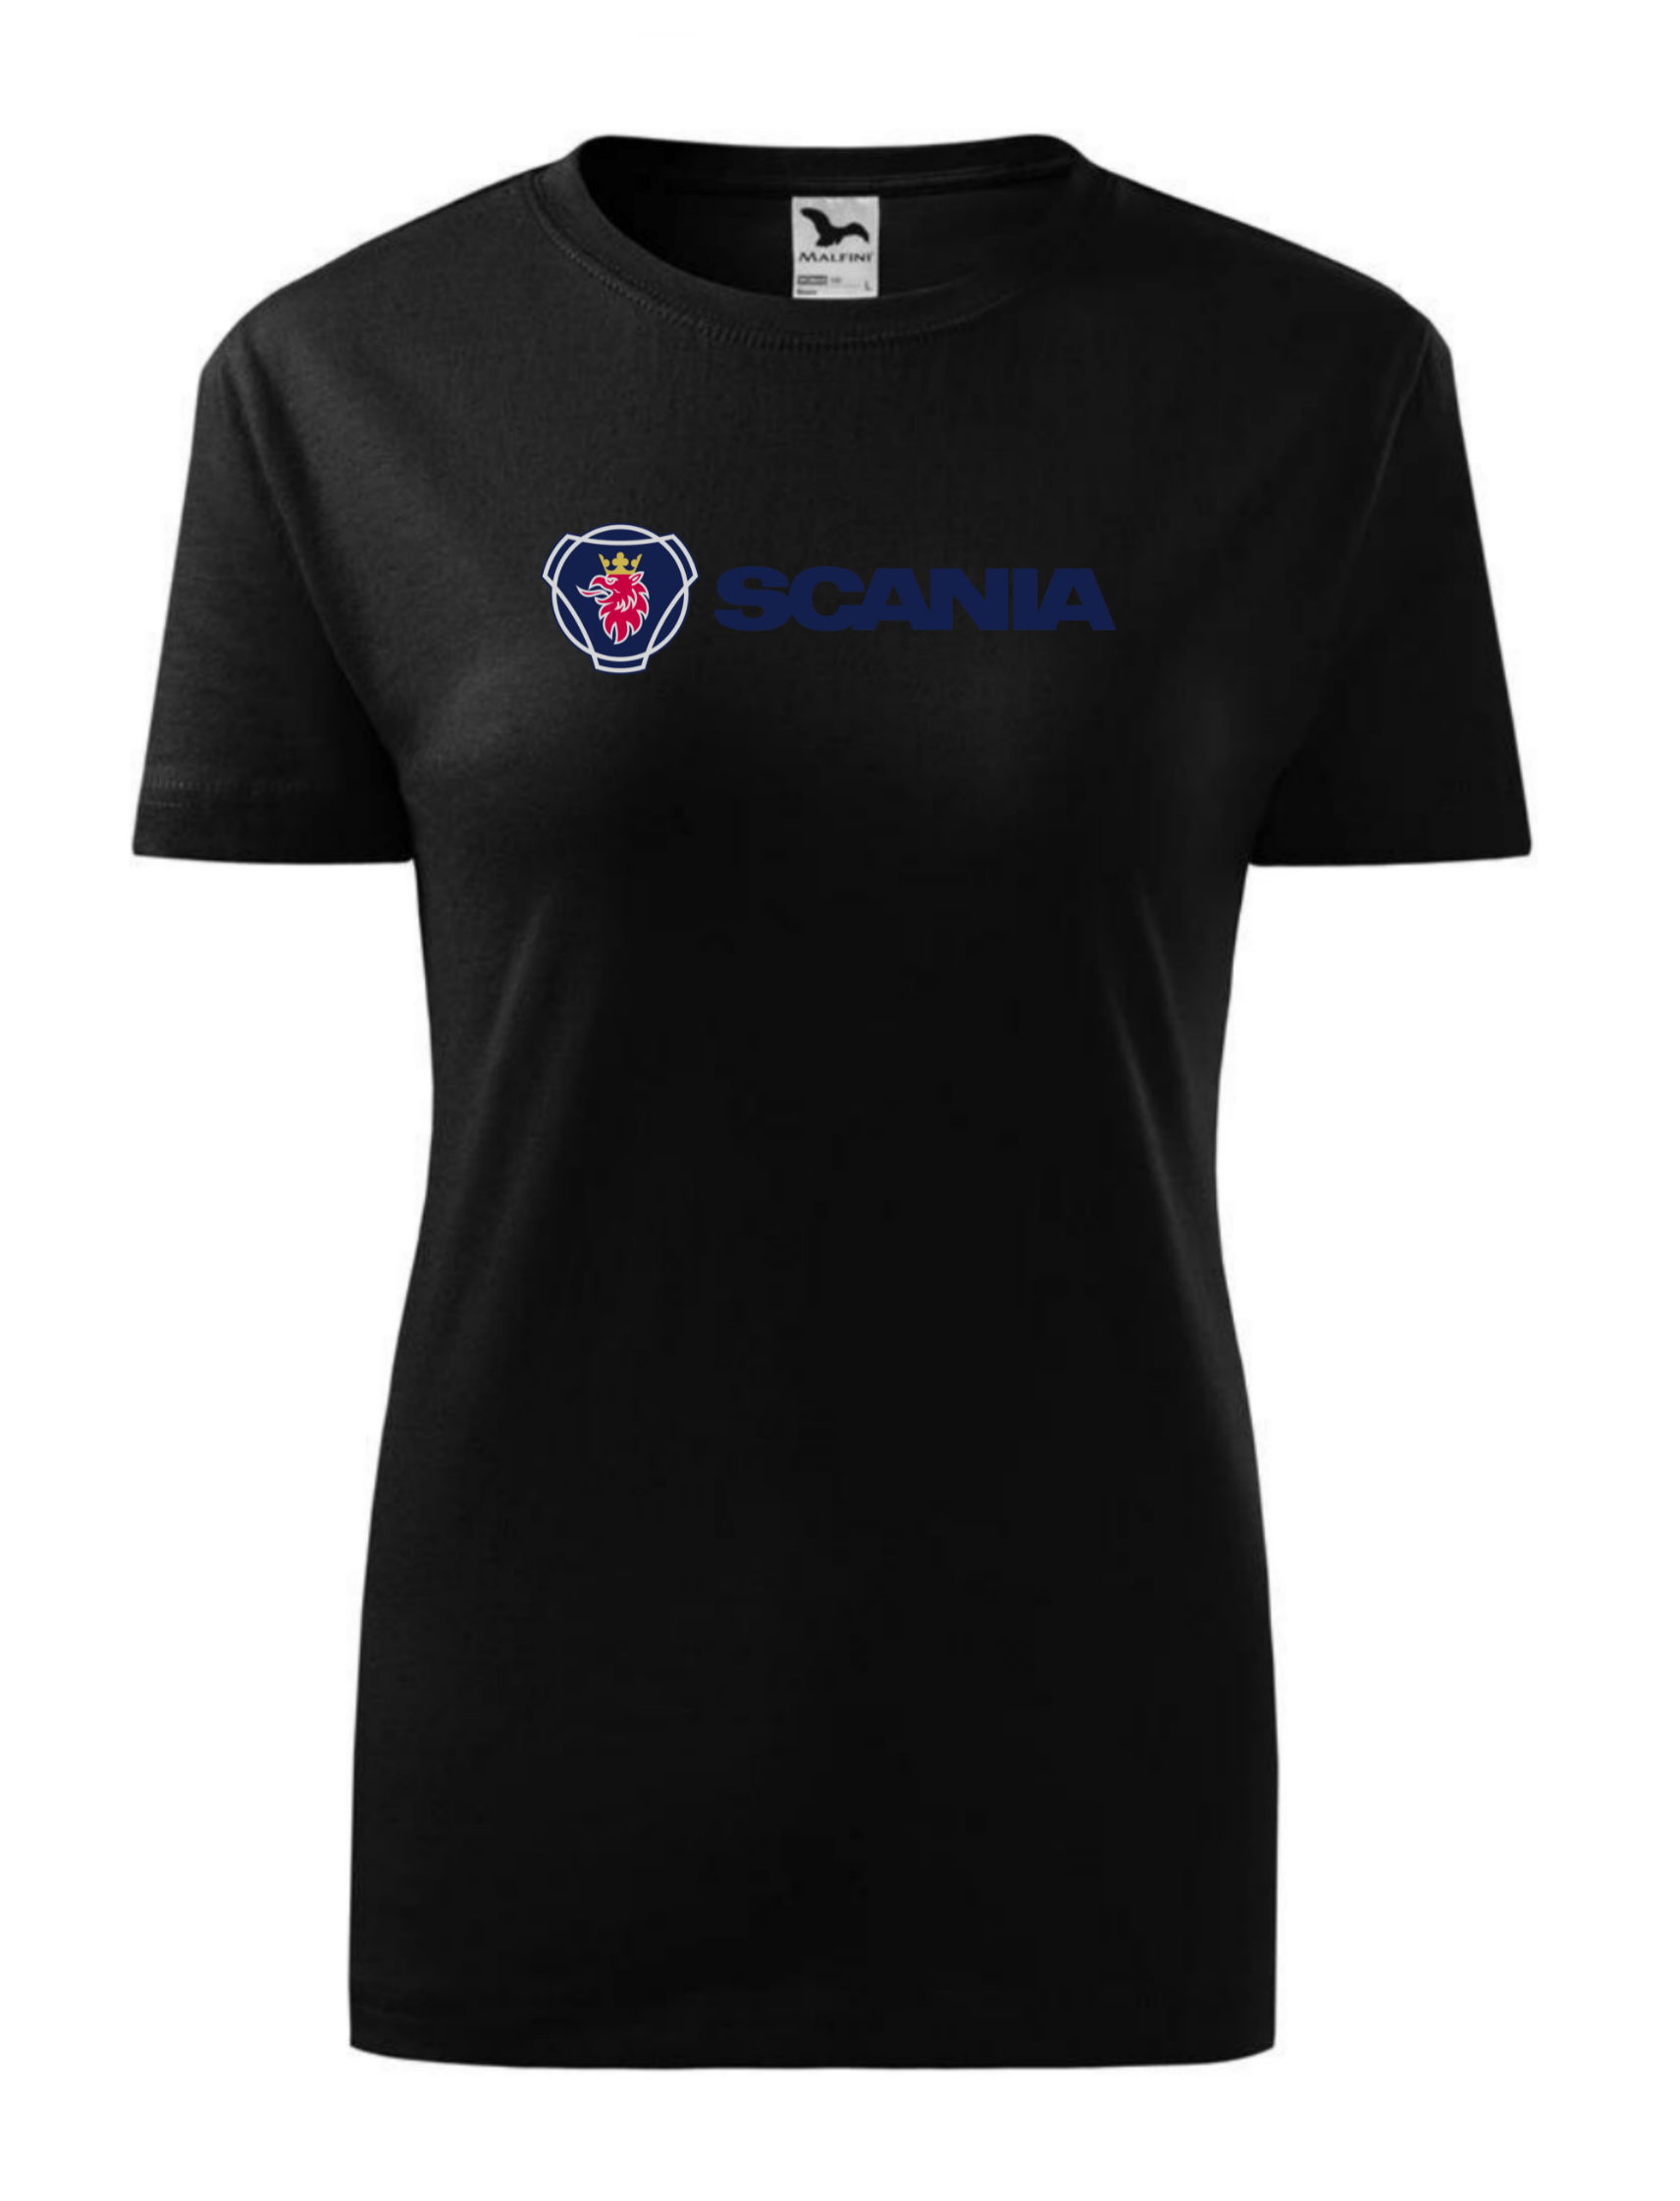 Dámské tričko s potiskem značky Scania